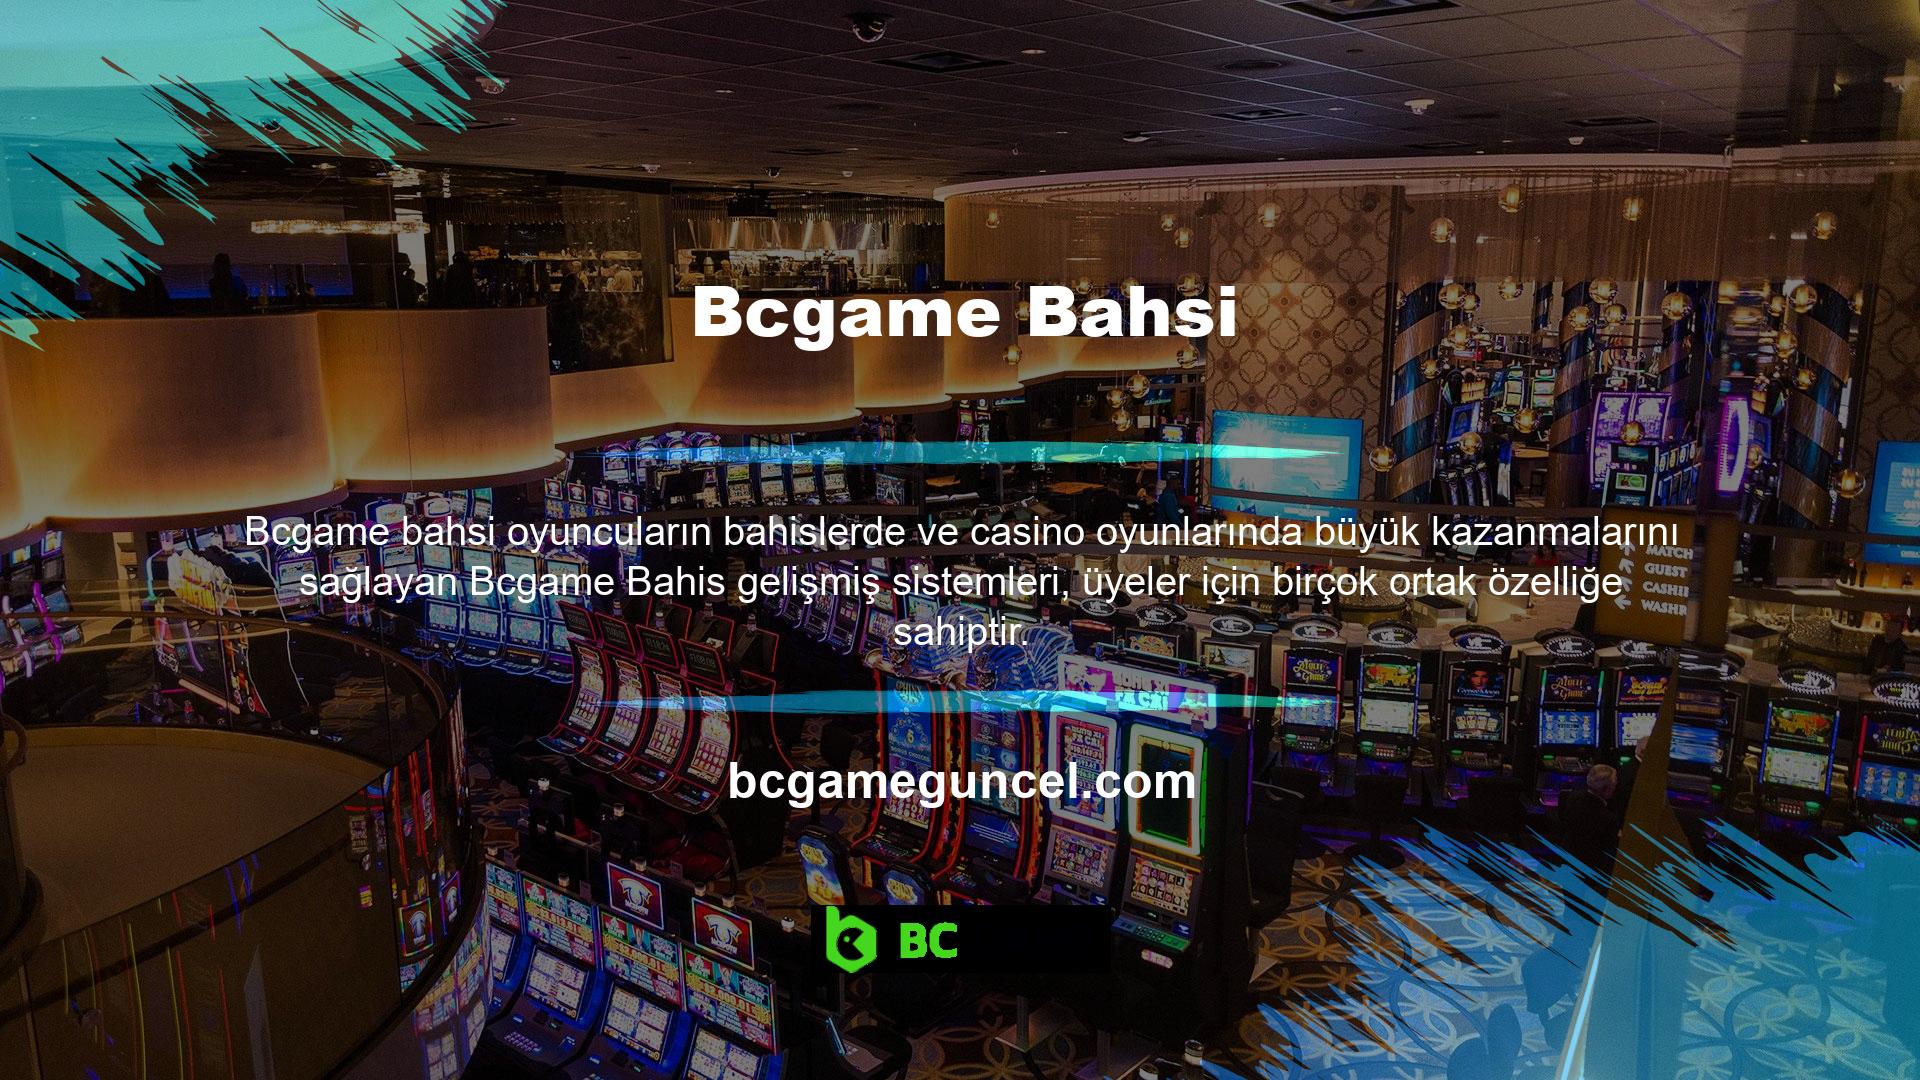 Bcgame büyük ödüller kazanabileceğiniz giriş alanı, üyelere sunulan yüksek oranlar, oyun çeşitliliği, rekabetçi bahis çeşitliliği, canlı bahis ve canlı casino seçenekleri nedeniyle oyuncu tercihinin popüler bir nedeni olarak görülüyor